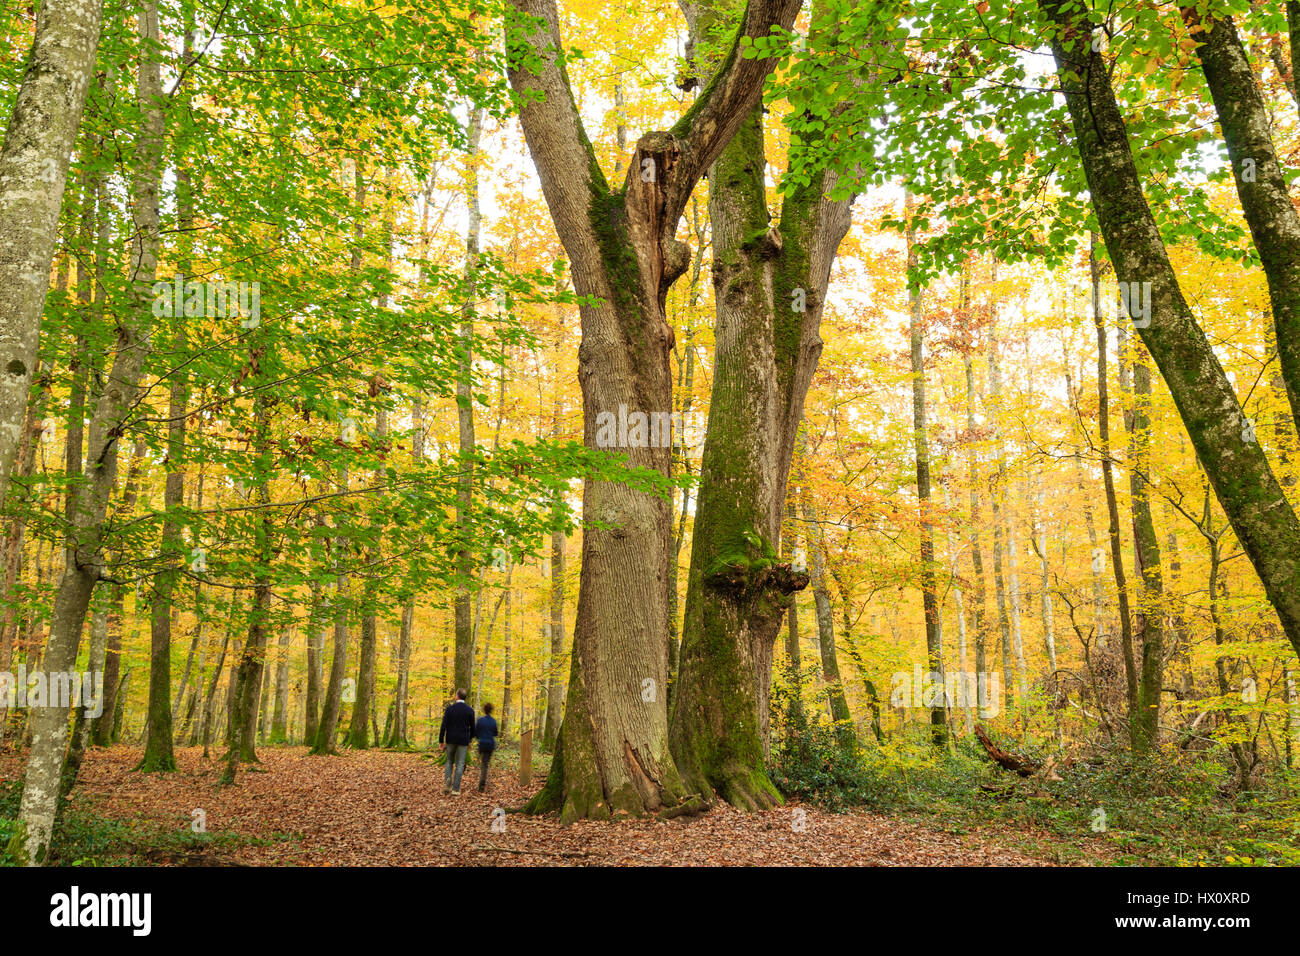 Francia, Allier, bosque de Tronçais, Saint-Bonnet-Troncais, remarkables sessiles oaks la Jumeaux (Quercus petraea) de edades comprendidas entre comienzos de siglo XVIeme Foto de stock